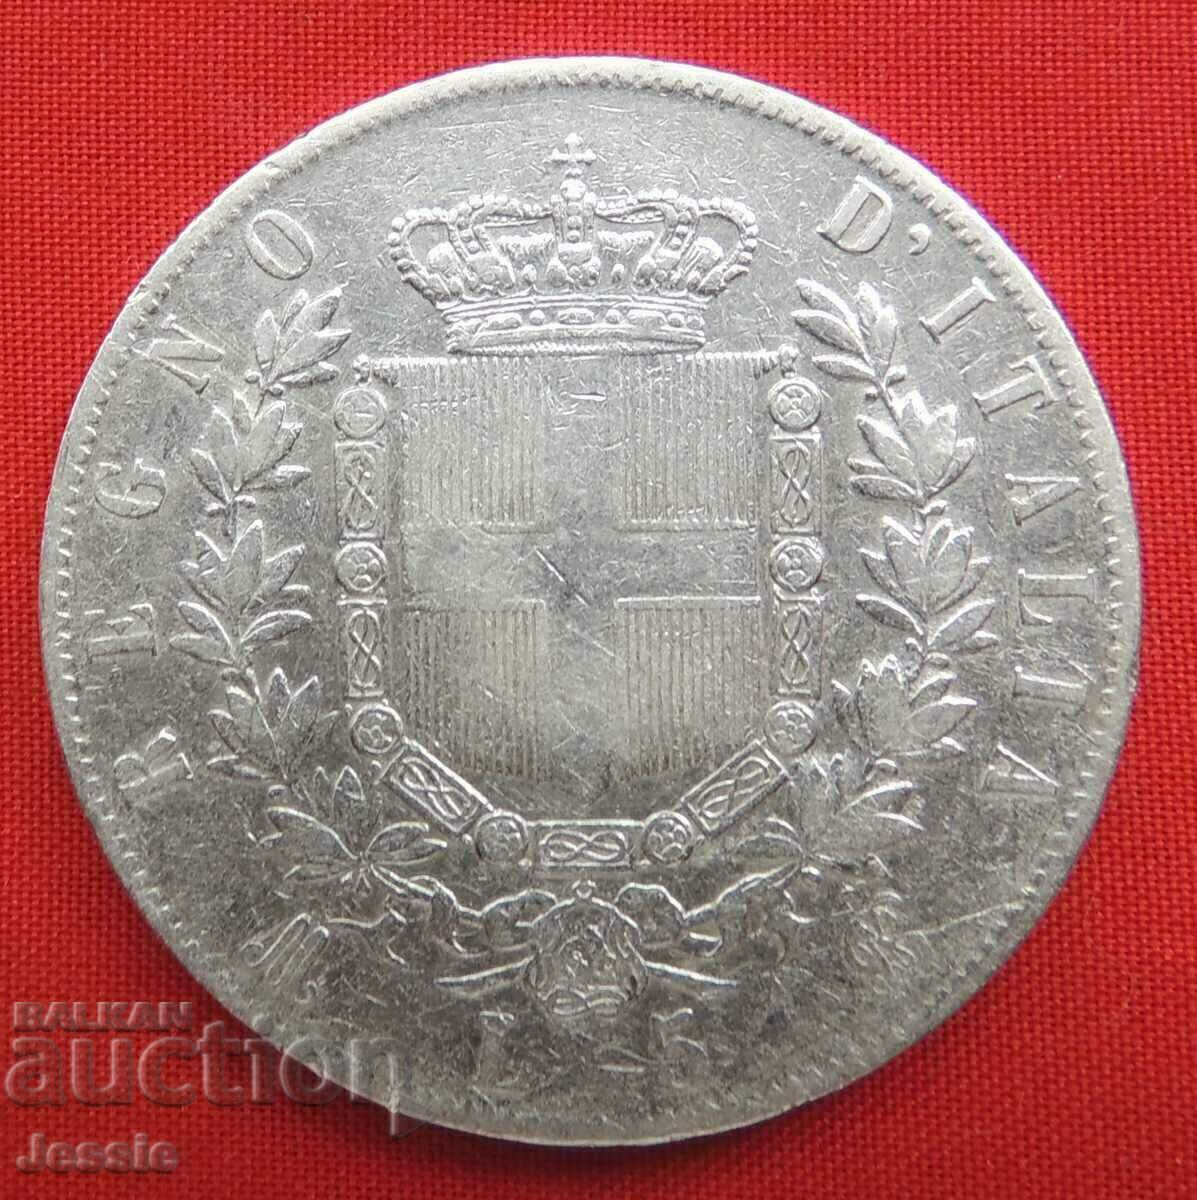 5 Лири 1874 M Италия сребро NO MADE IN CHINA